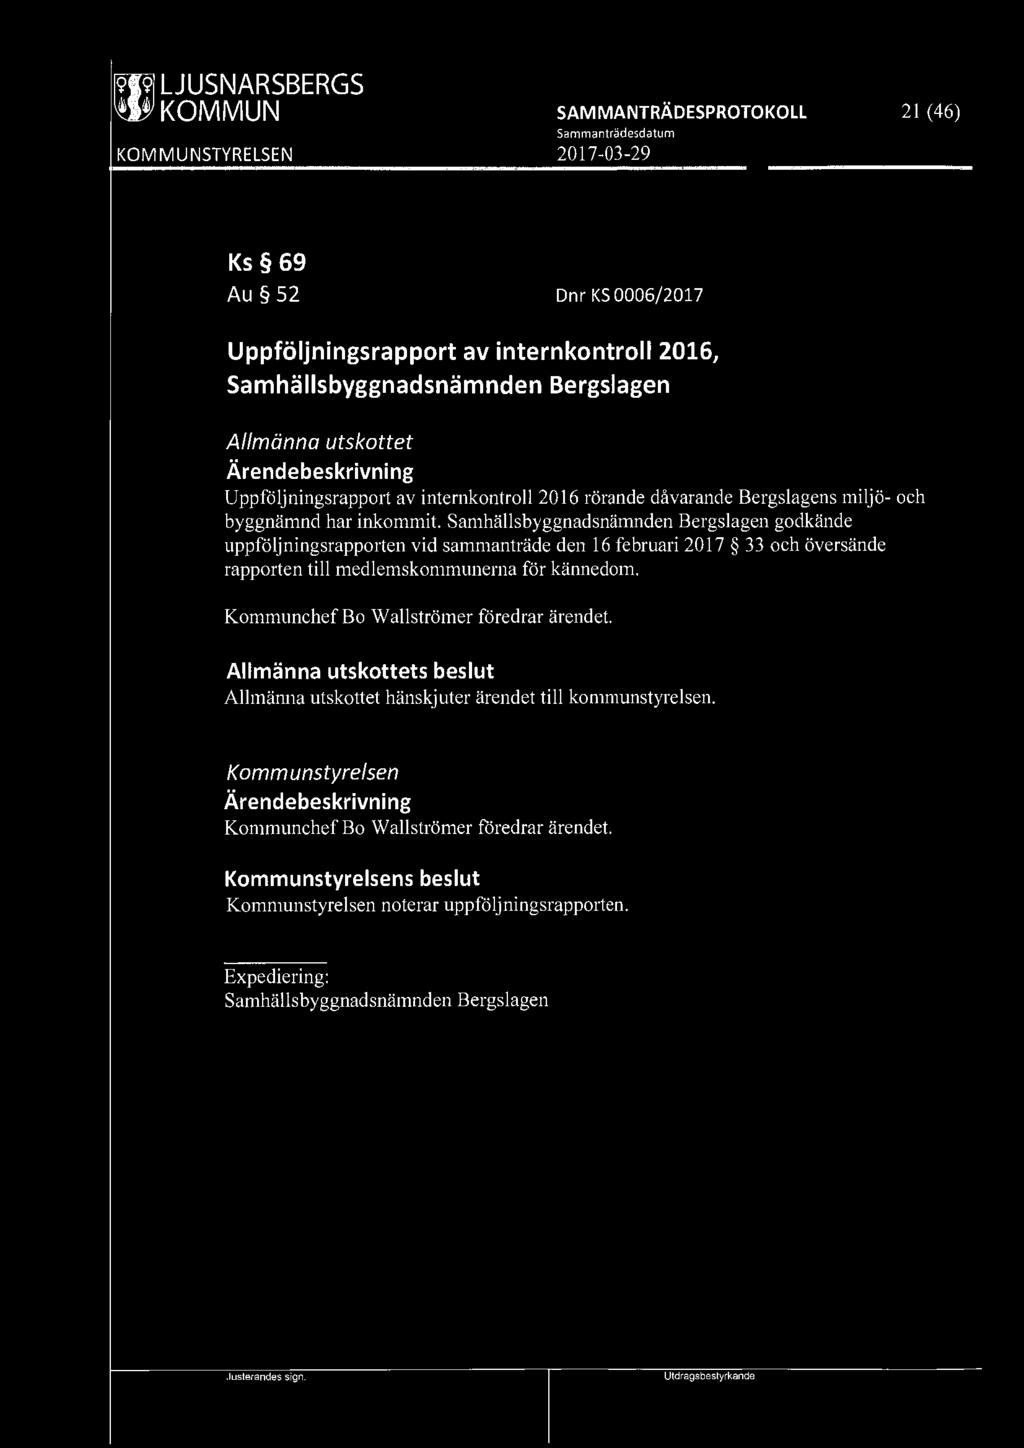 [9TI9l LJUSNARSBERGS 21 ( 46) Ks 69 Au 52 Dnr KS 0006/2017 Uppföljningsrapport av internkontroll 2016, Samhällsbyggnadsnämnden Bergslagen Allmänna utskottet Uppföljningsrapport av